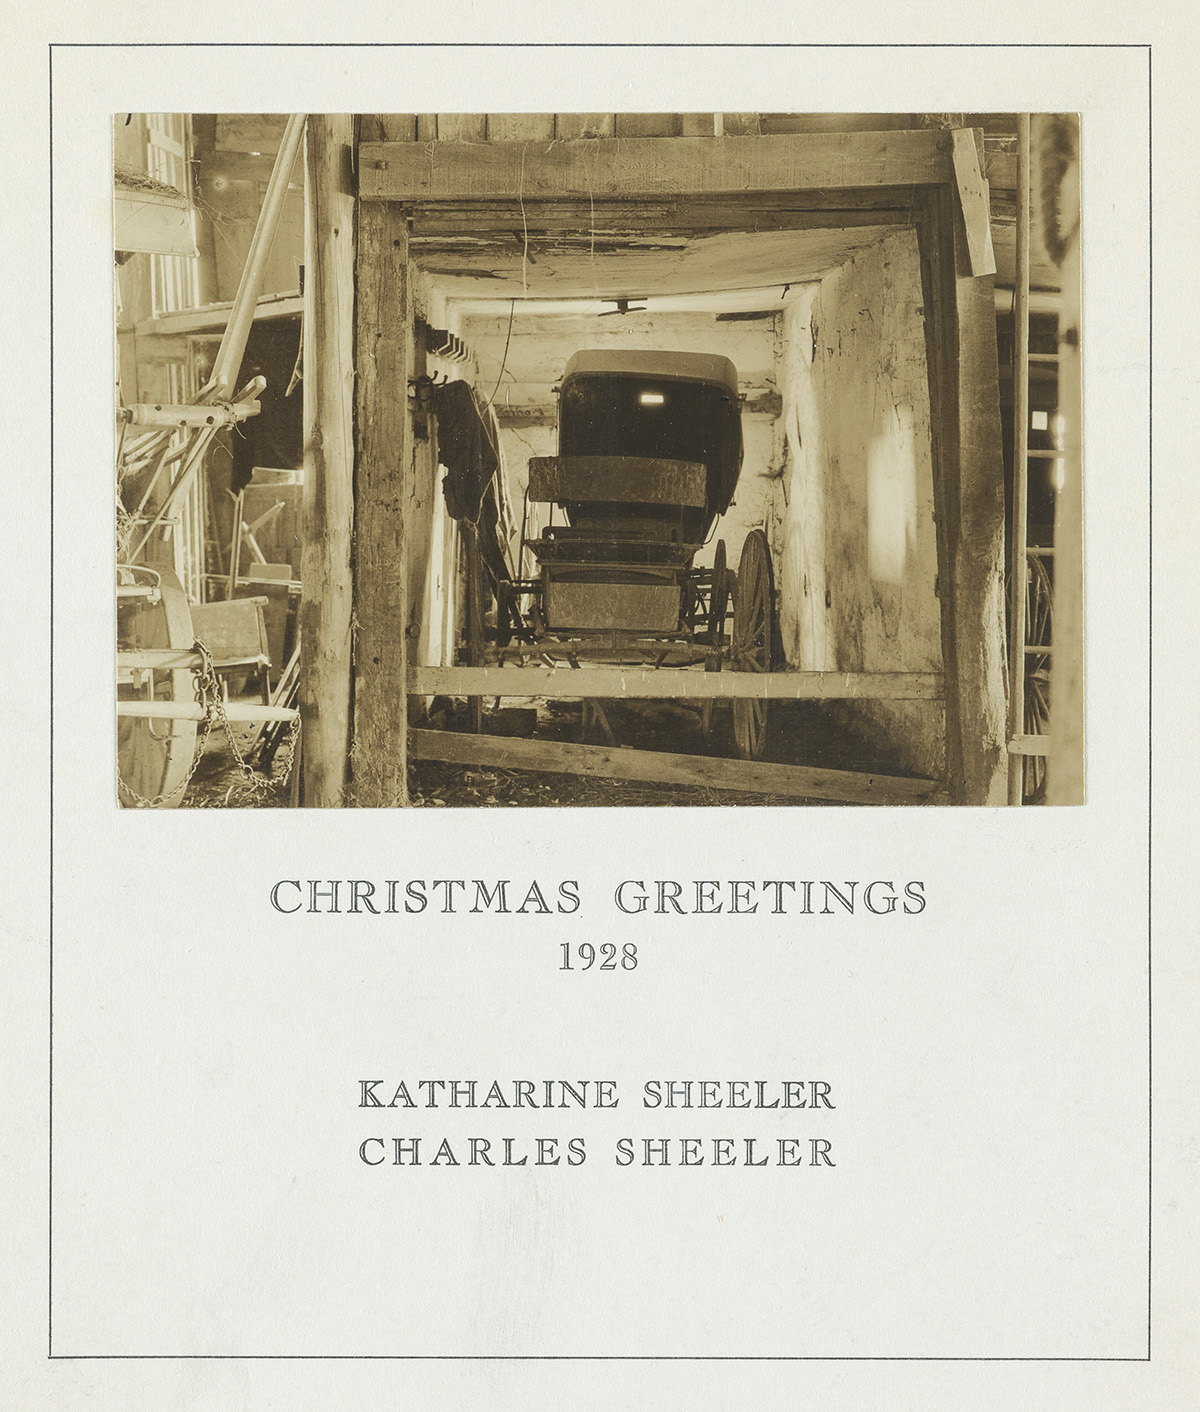 CHARLES SHEELER (1883-1965) Buggy in a Barn, Doylestown, Pennsylvania (Christmas card).